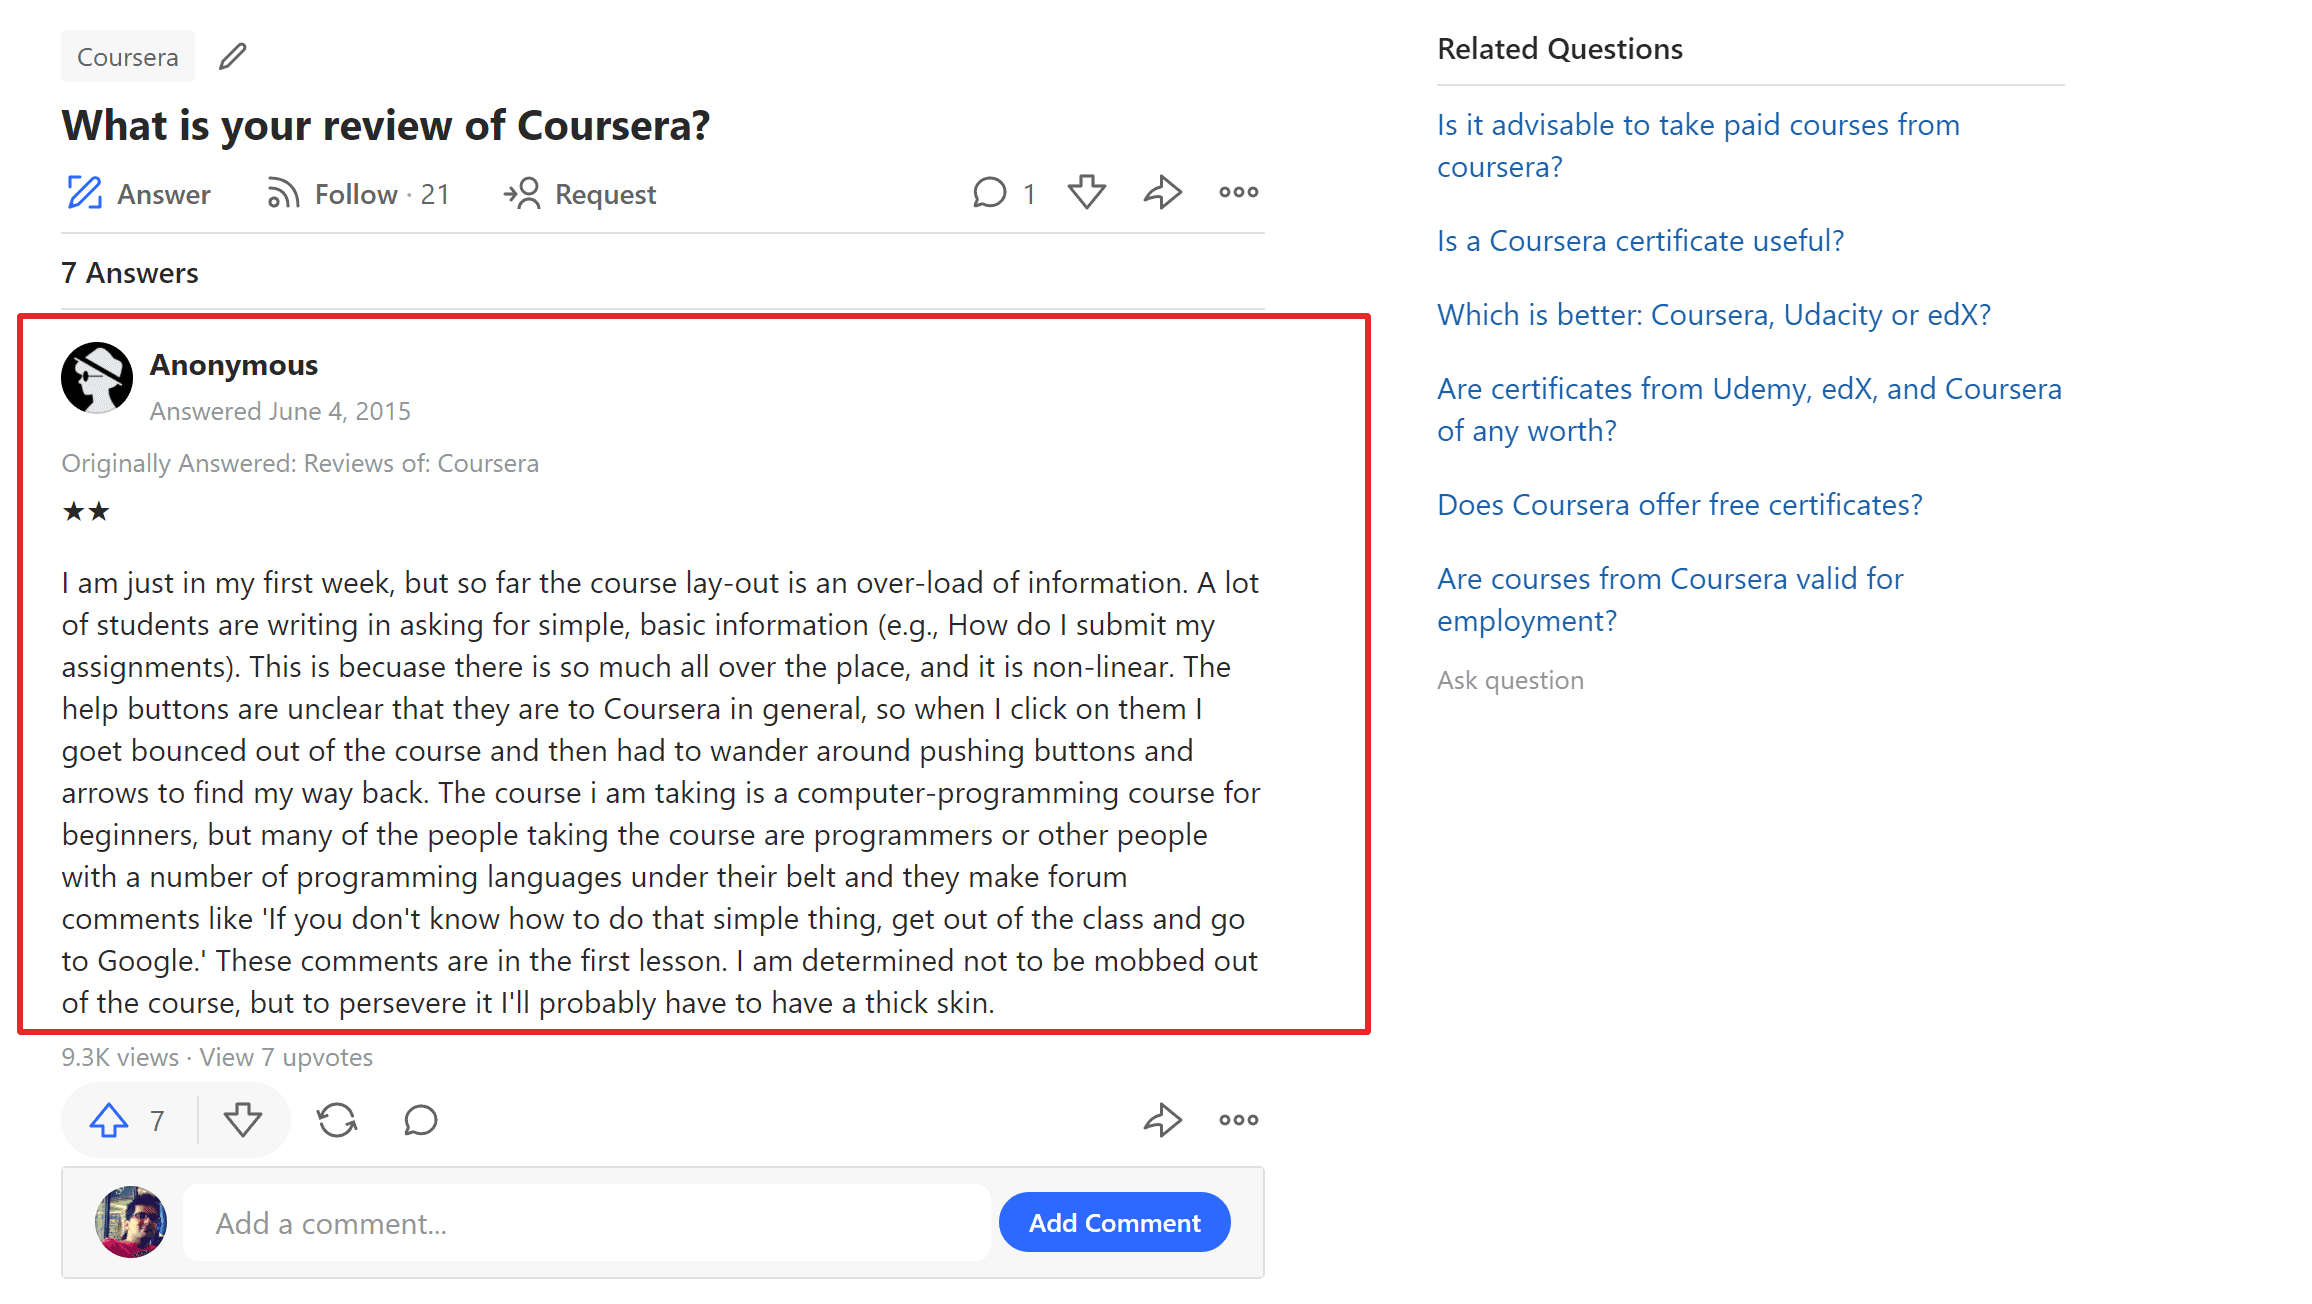 Coursera-recensies op Quora